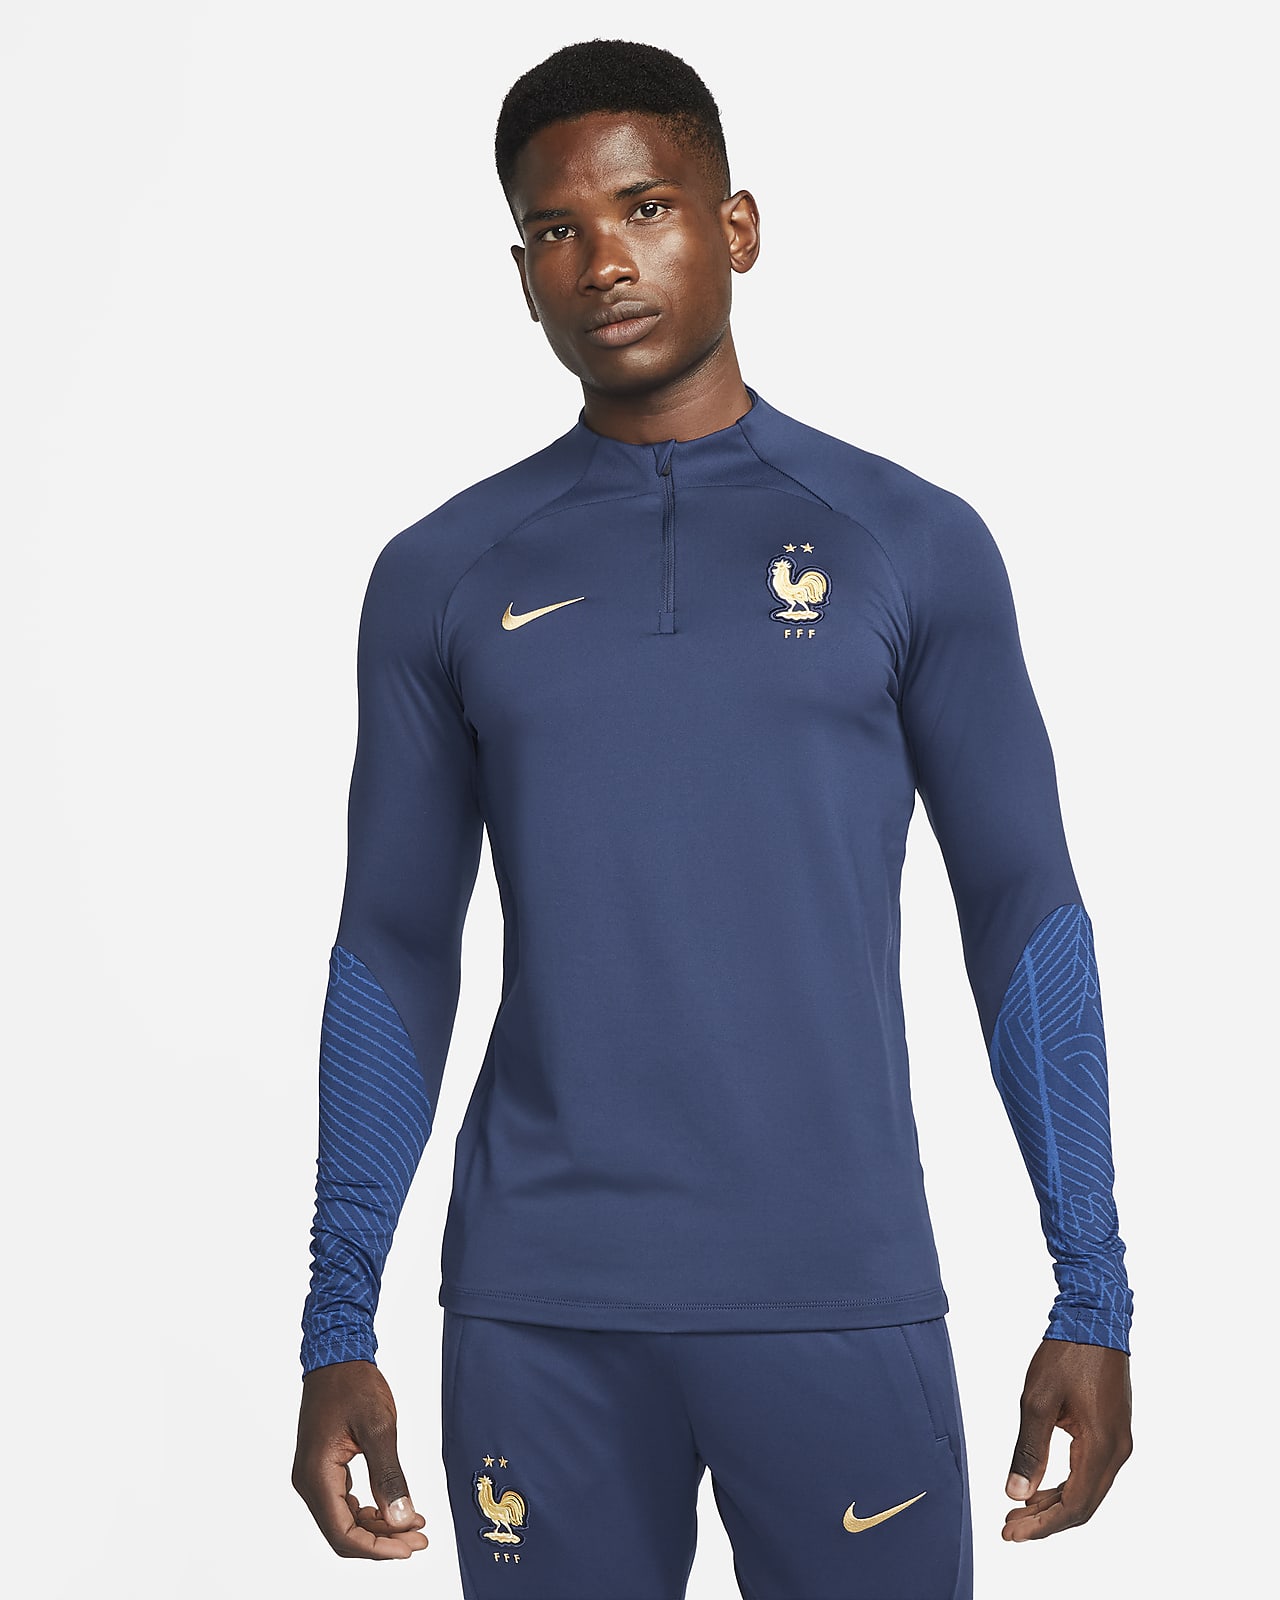 Ανδρική πλεκτή ποδοσφαιρική μπλούζα προπόνησης Nike Dri-FIT Γαλλική Ομοσπονδία Ποδοσφαίρου Strike